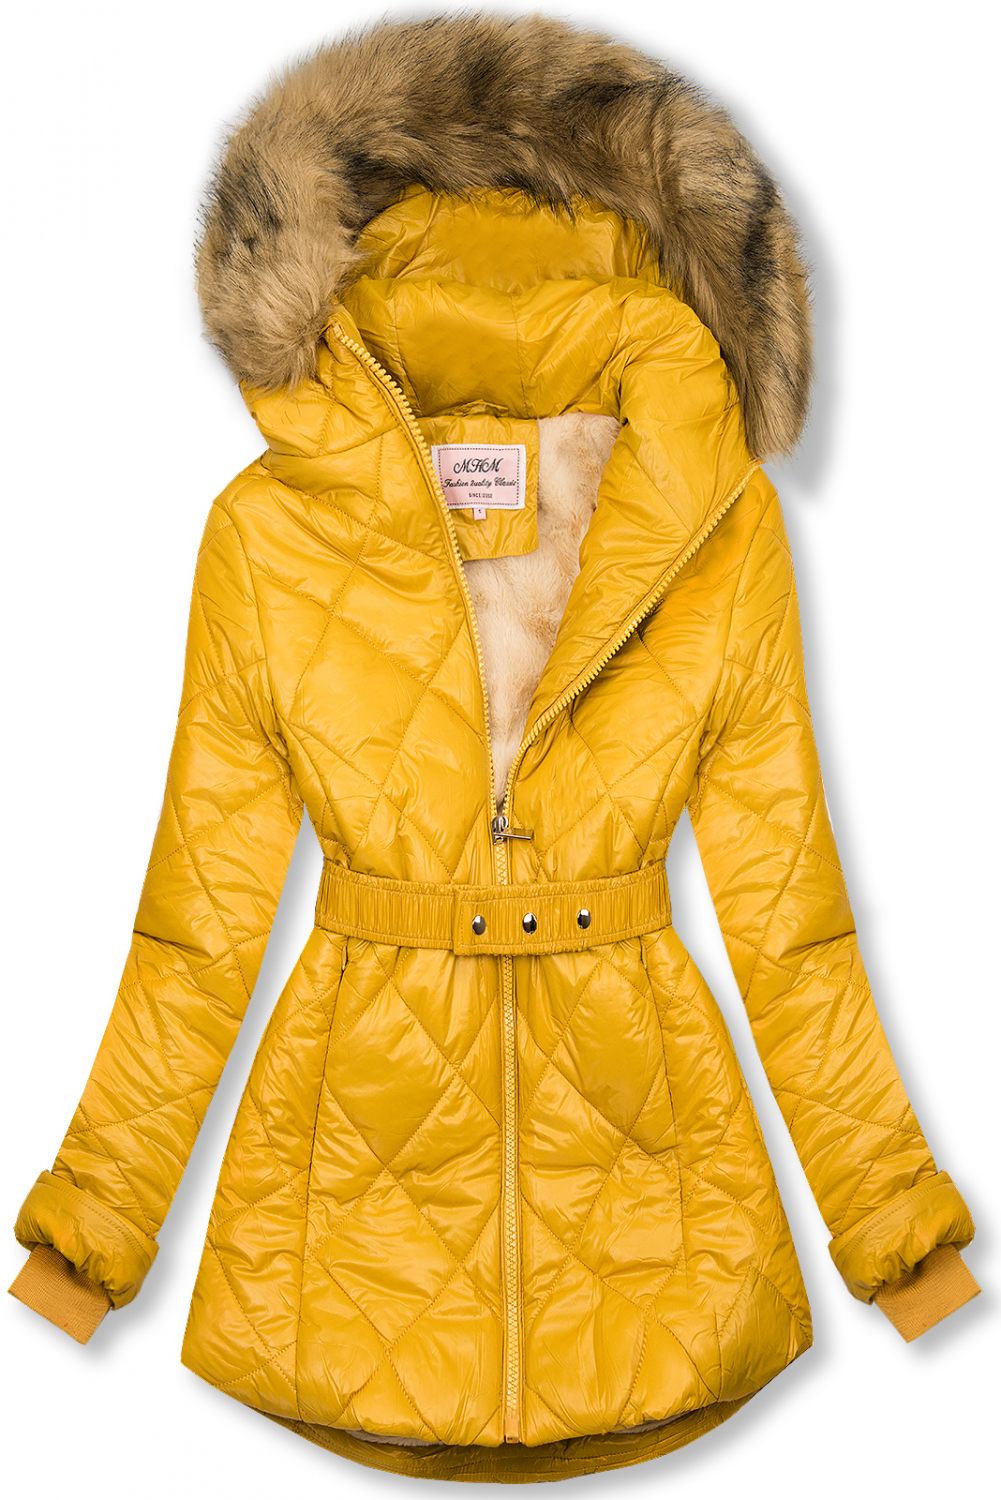 Žltá lesklá zimná bunda s opaskom.
- neodopínateľná kapucňa
- odnímateľná kožušina
- zapínanie na zips
- v prednej časti 2 vrecká 
- vnútro zateplené plyšom
- s opaskom
- materiál: 100% polyester, podšívka: 100% polyester
 